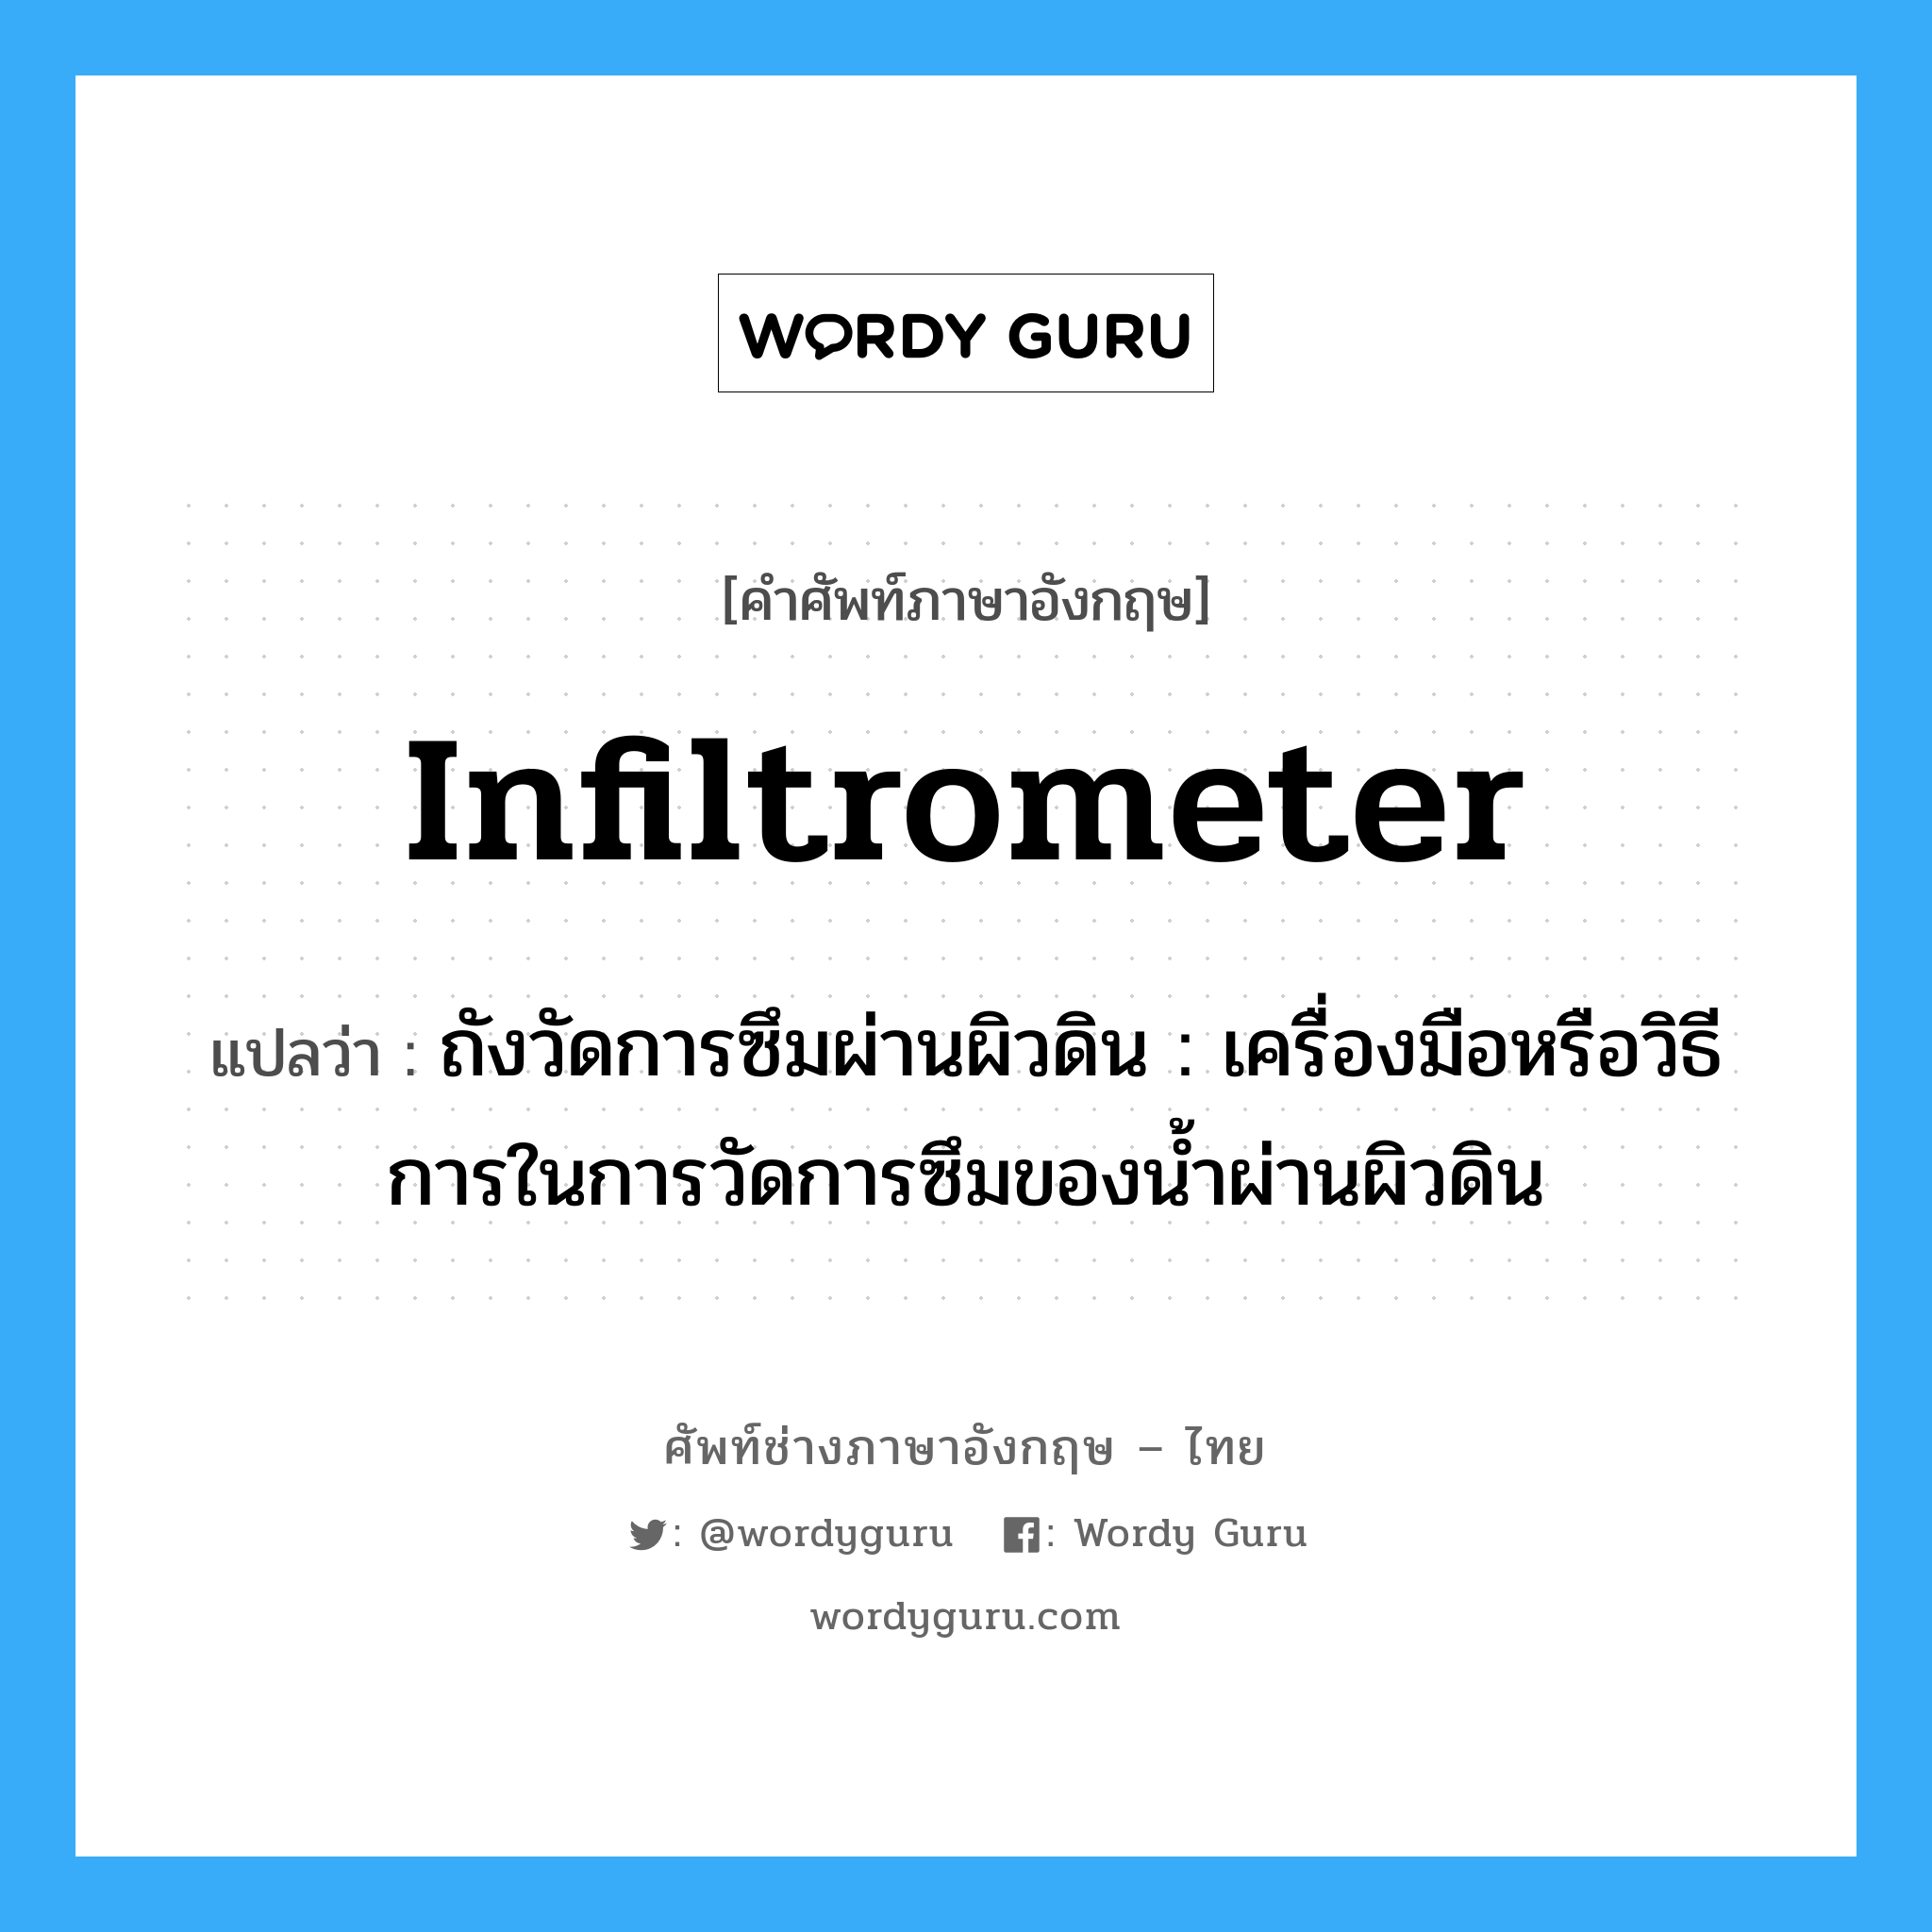 infiltrometer แปลว่า?, คำศัพท์ช่างภาษาอังกฤษ - ไทย infiltrometer คำศัพท์ภาษาอังกฤษ infiltrometer แปลว่า ถังวัดการซึมผ่านผิวดิน : เครื่องมือหรือวิธีการในการวัดการซึมของน้ำผ่านผิวดิน